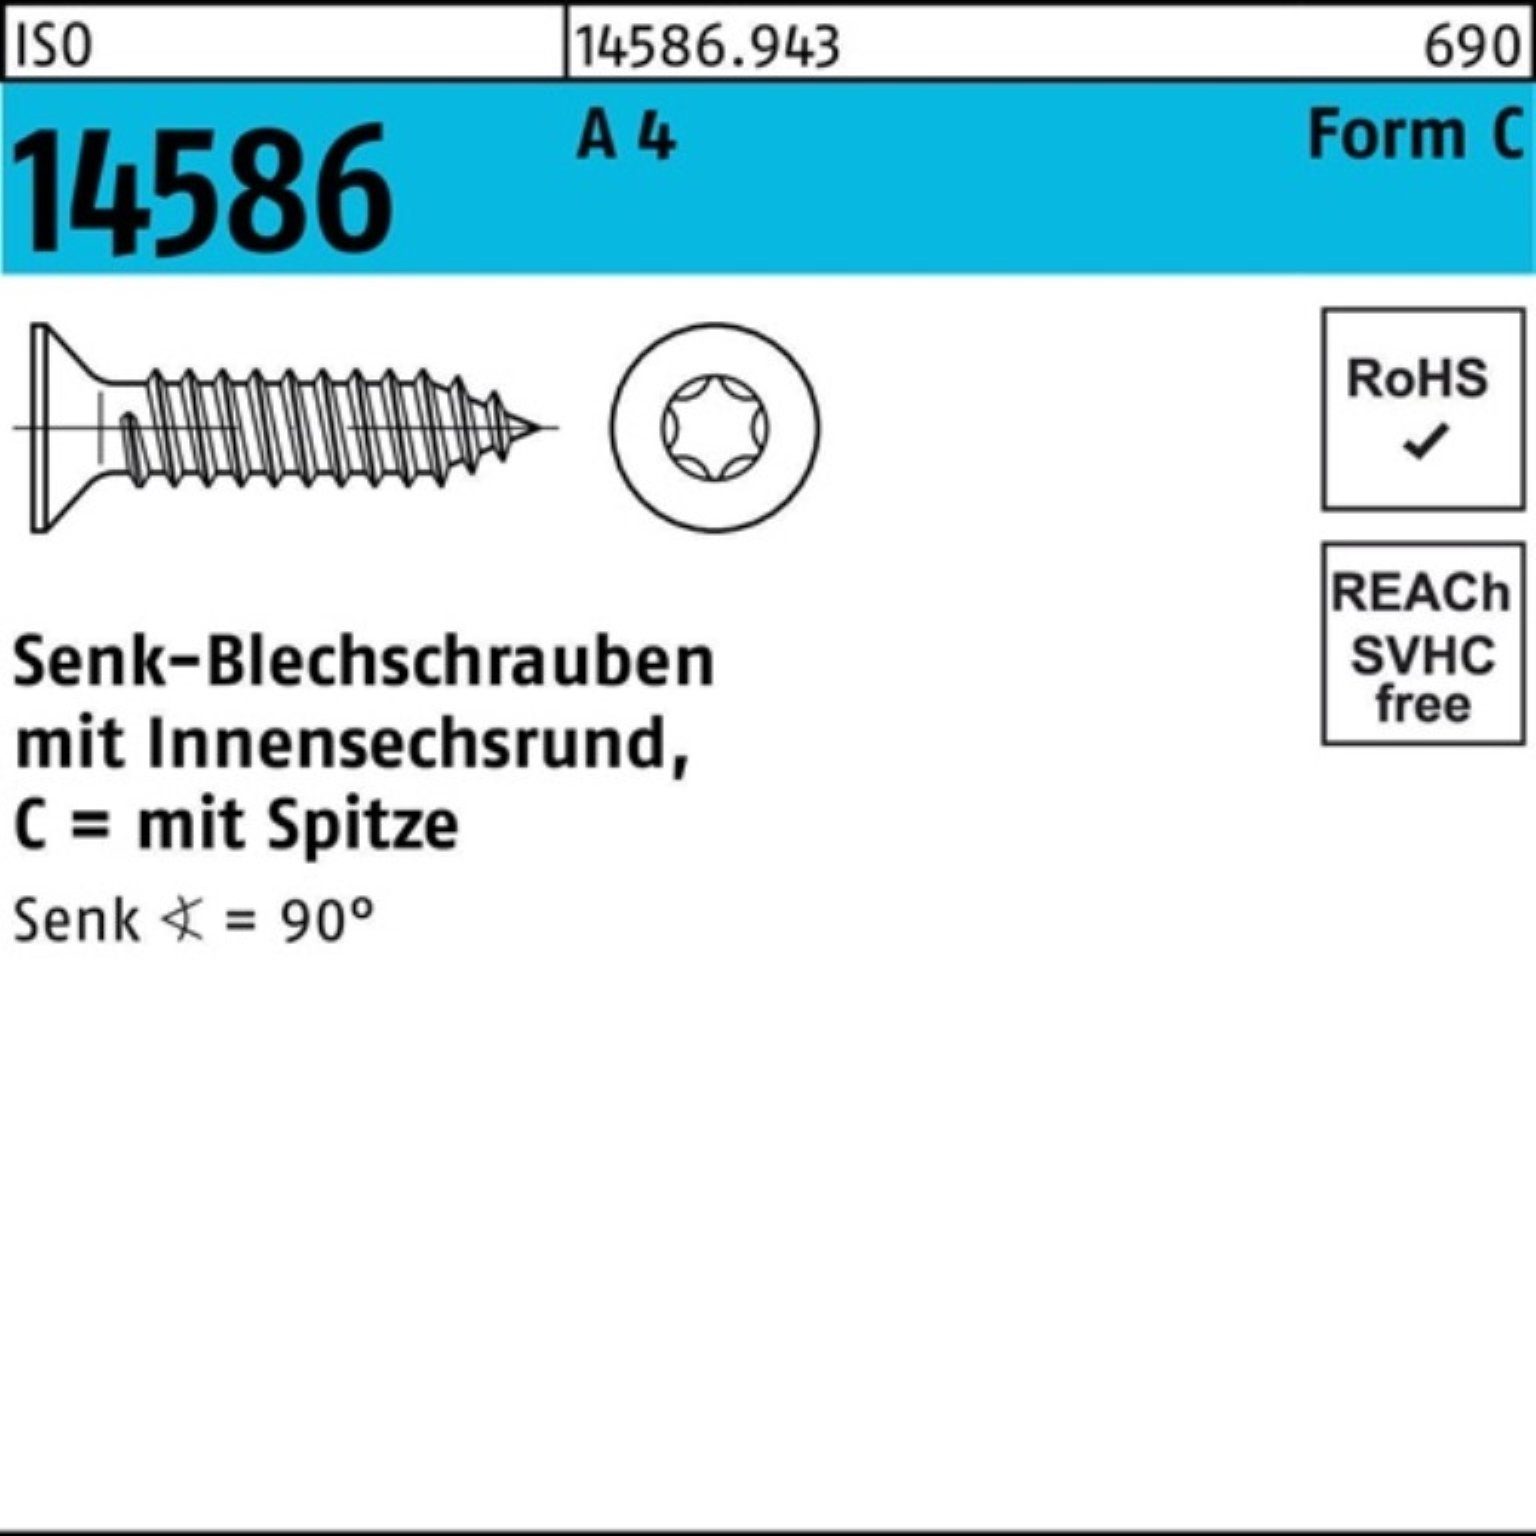 Reyher Schraube 250er Pack Senkblechschraube 14586 250 ISO 38-T25 A ISR/Spitze 4 5,5x